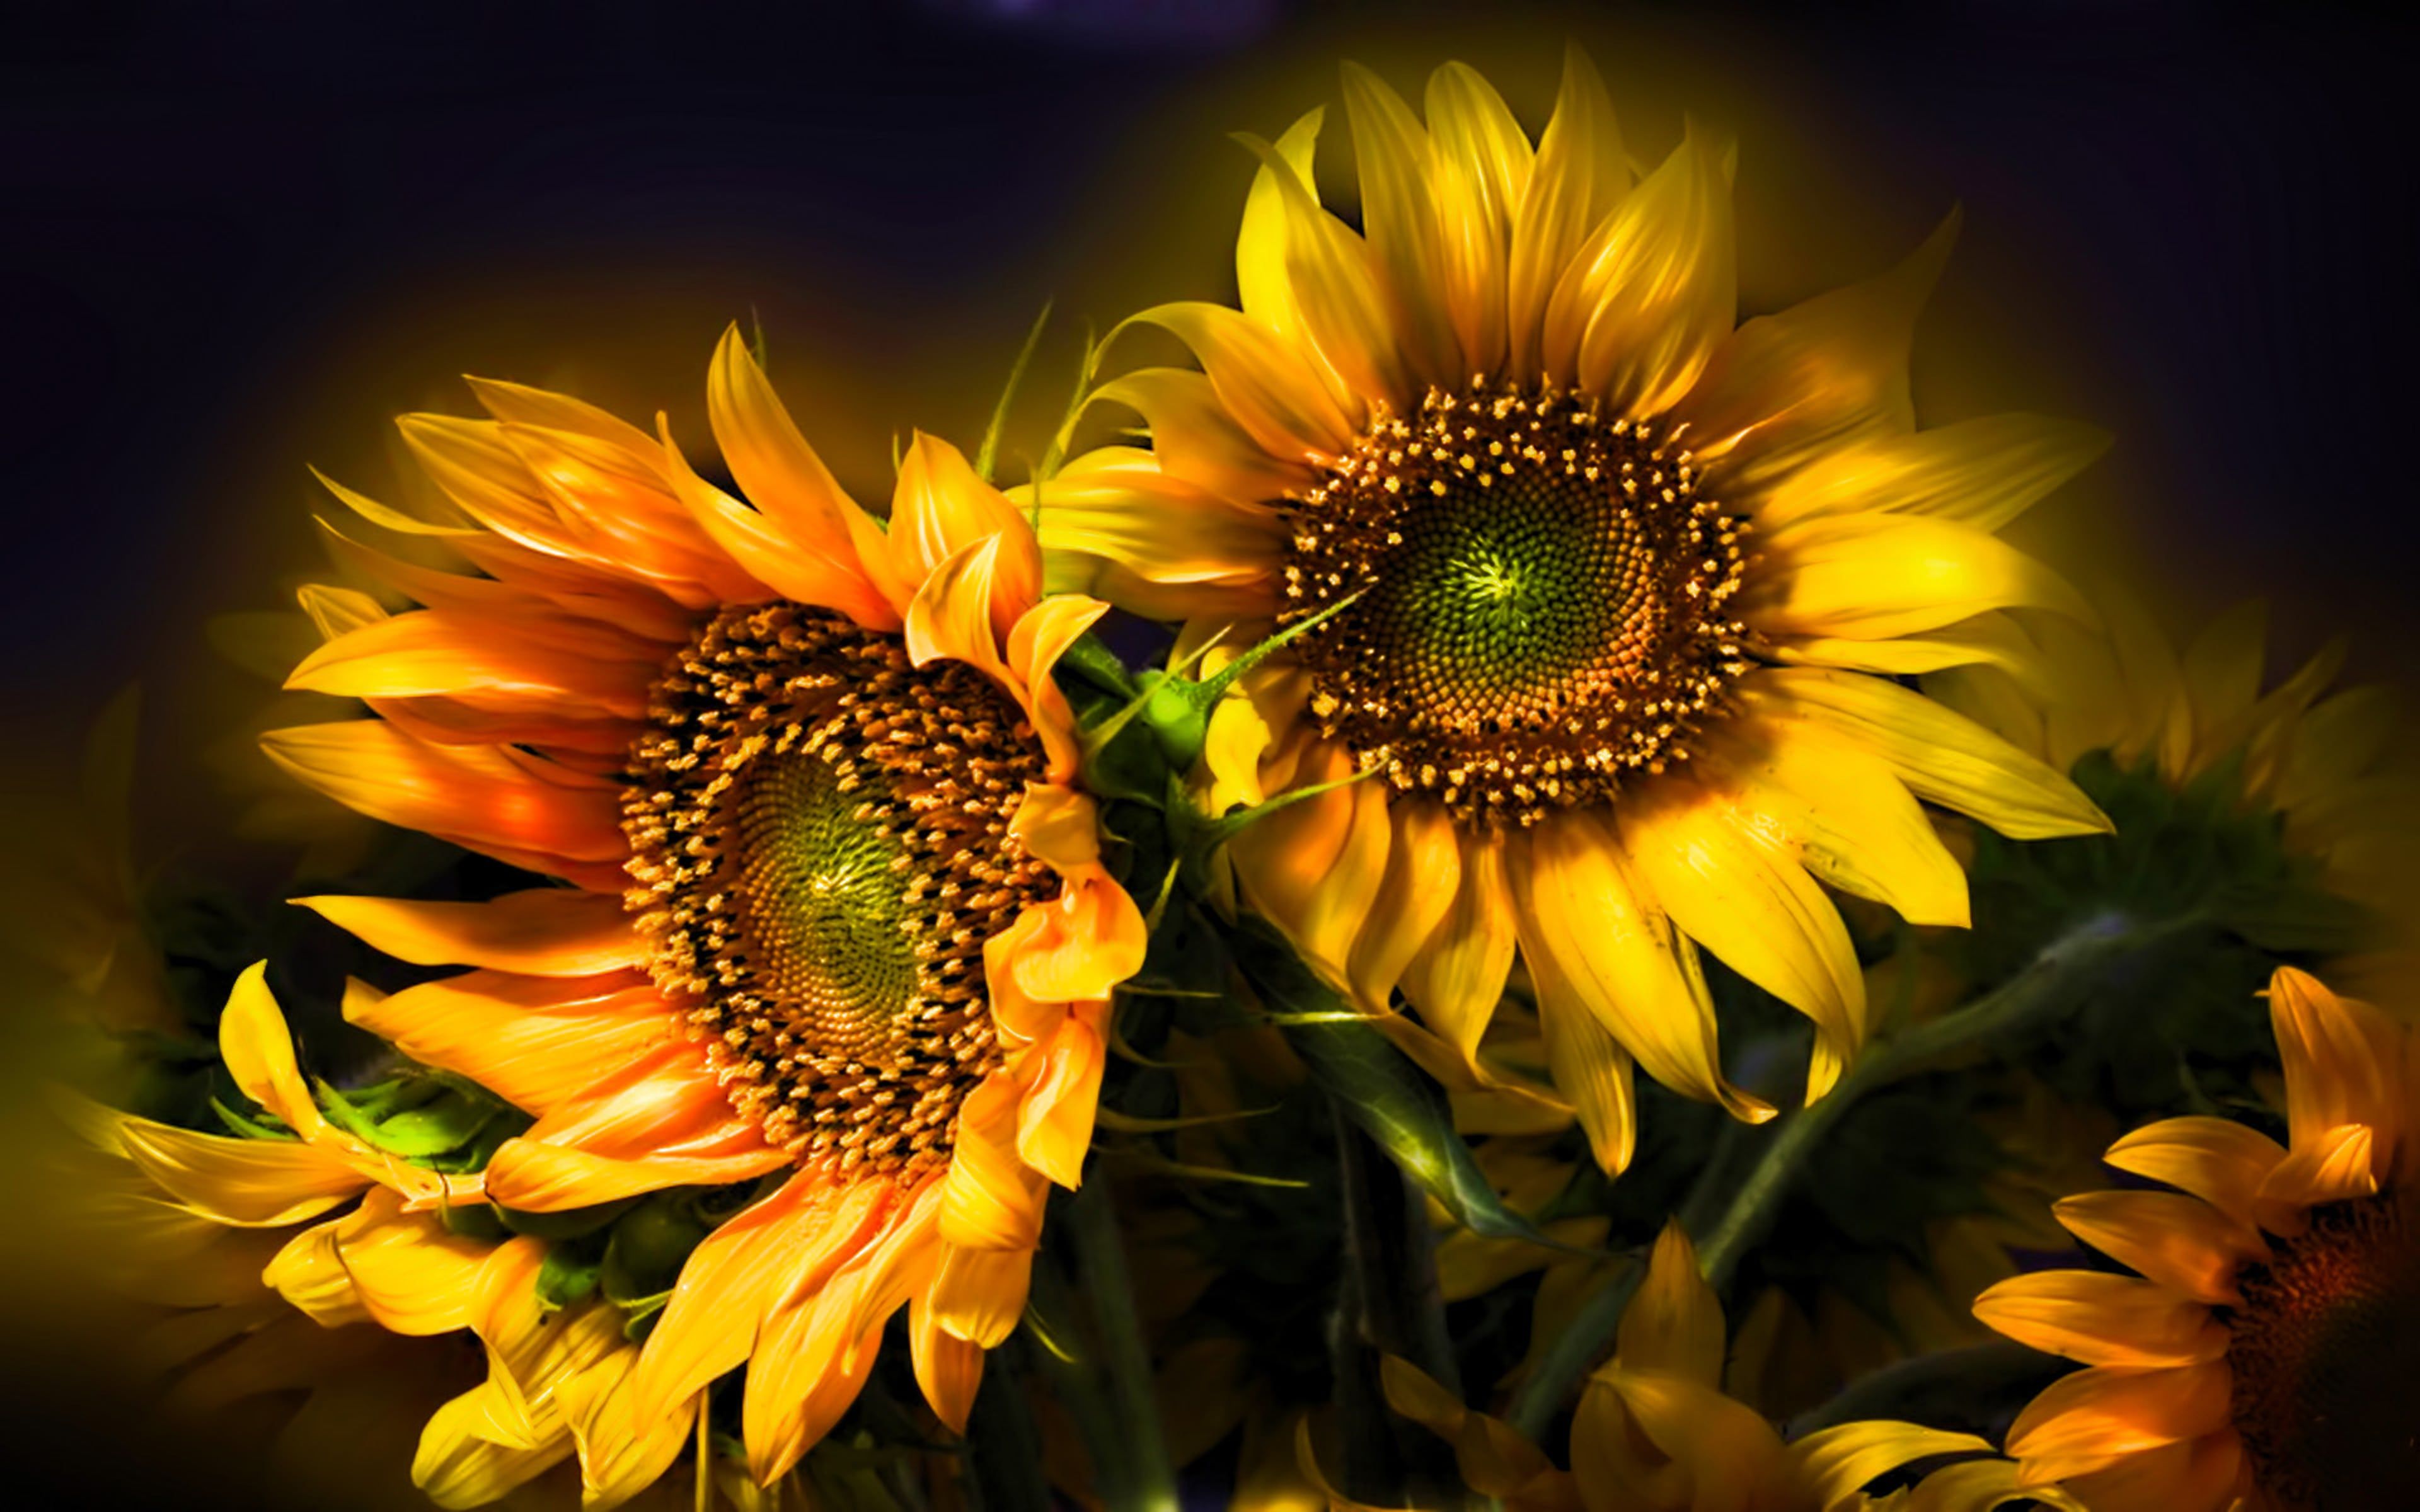 Sunflower Art Wallpaper Hd - HD Wallpaper 